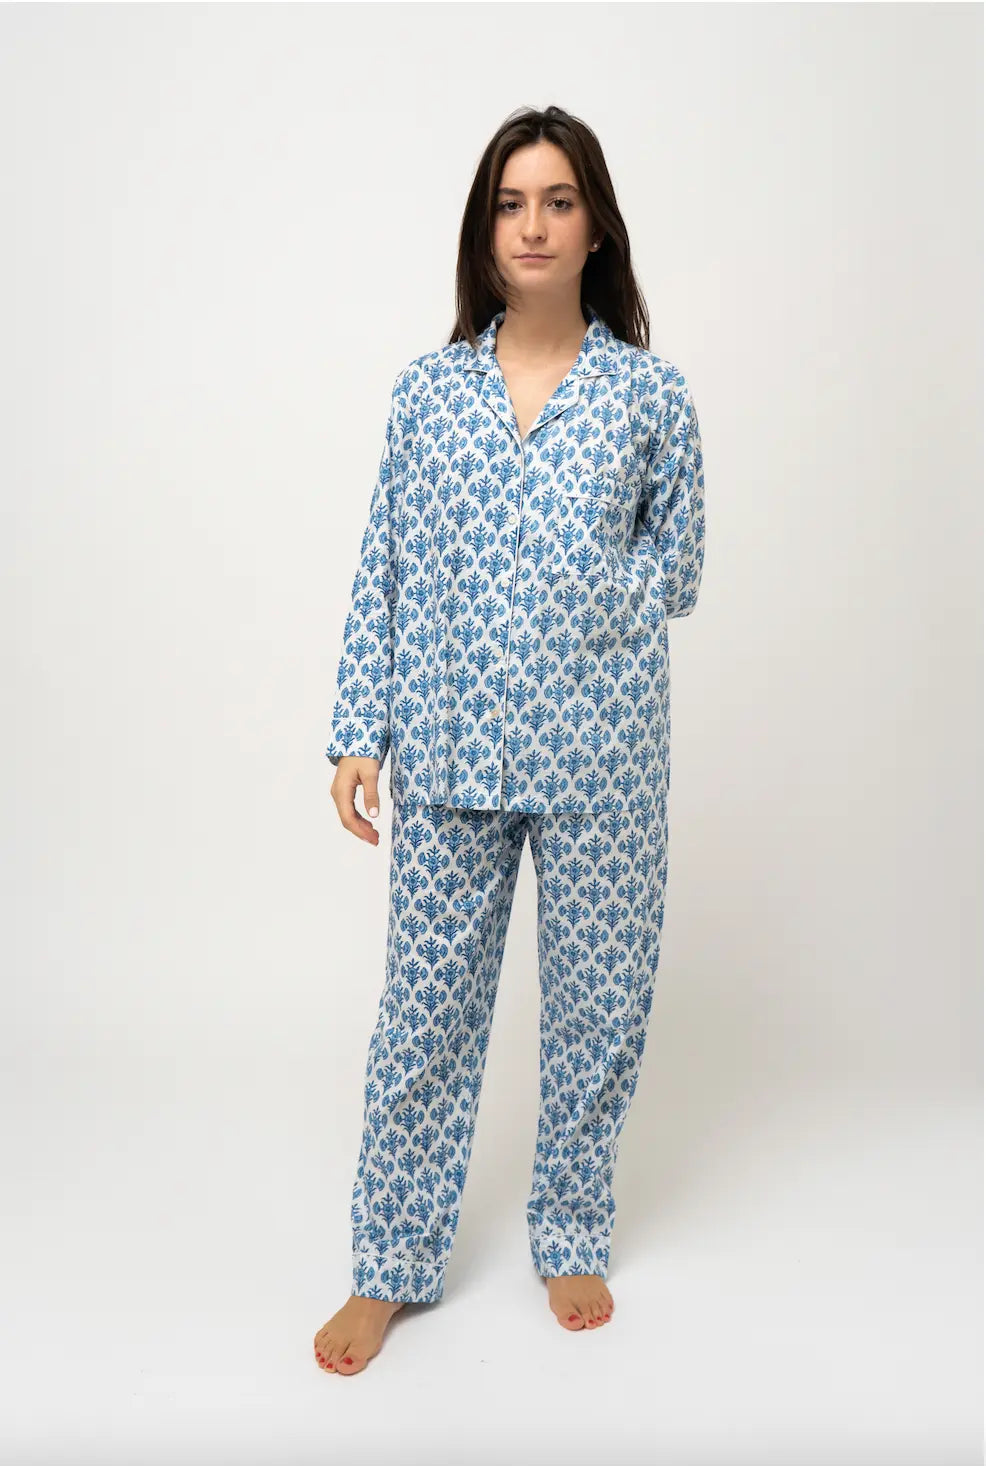 Susie Blue Pyjamas Parasol-UK